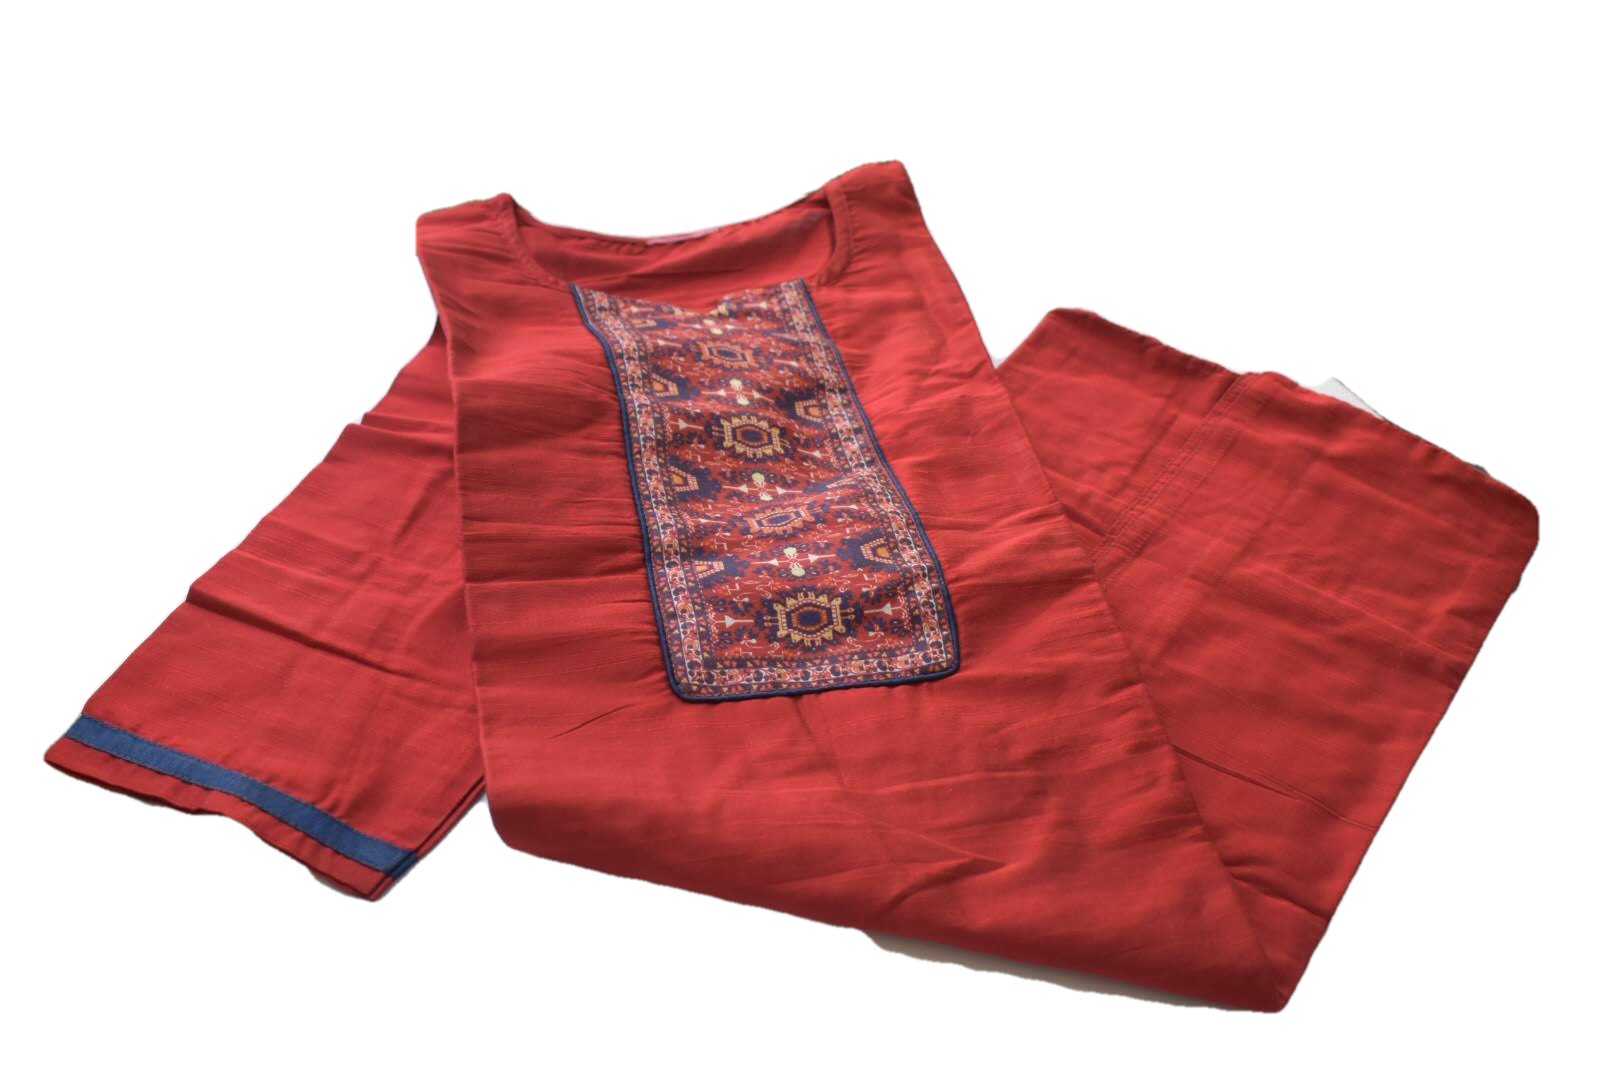 Orangish Red Color - Raw Silk Kurti Size Small/Medium - 30/32 Junior size. Big Girls size - 18 plus